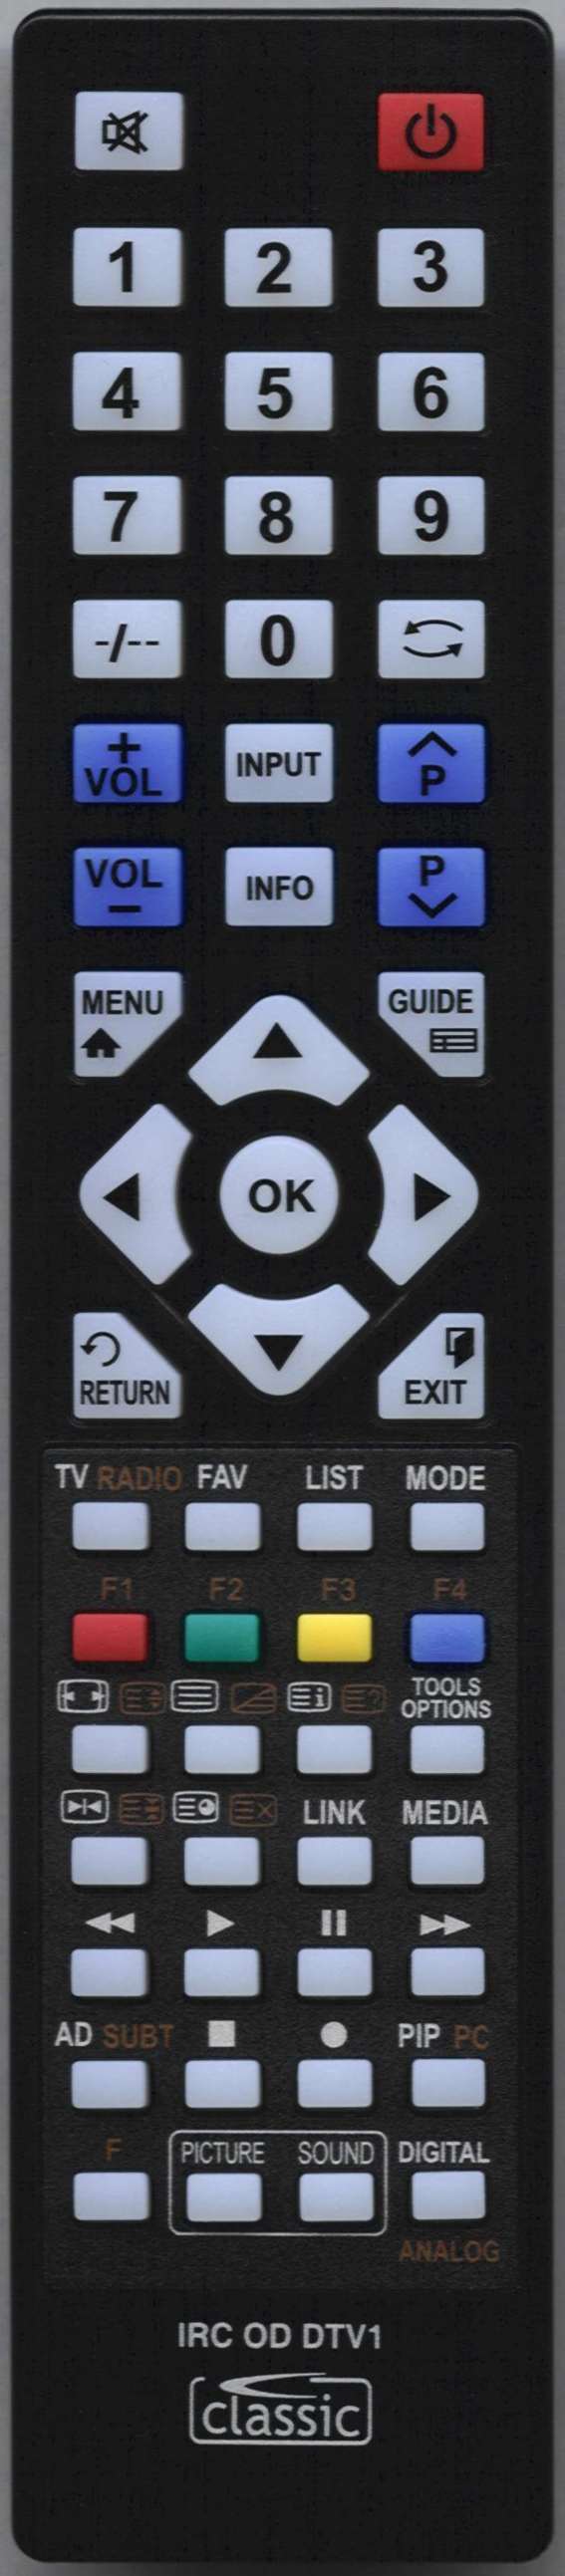 Hisense PDP 4220EU Remote Control